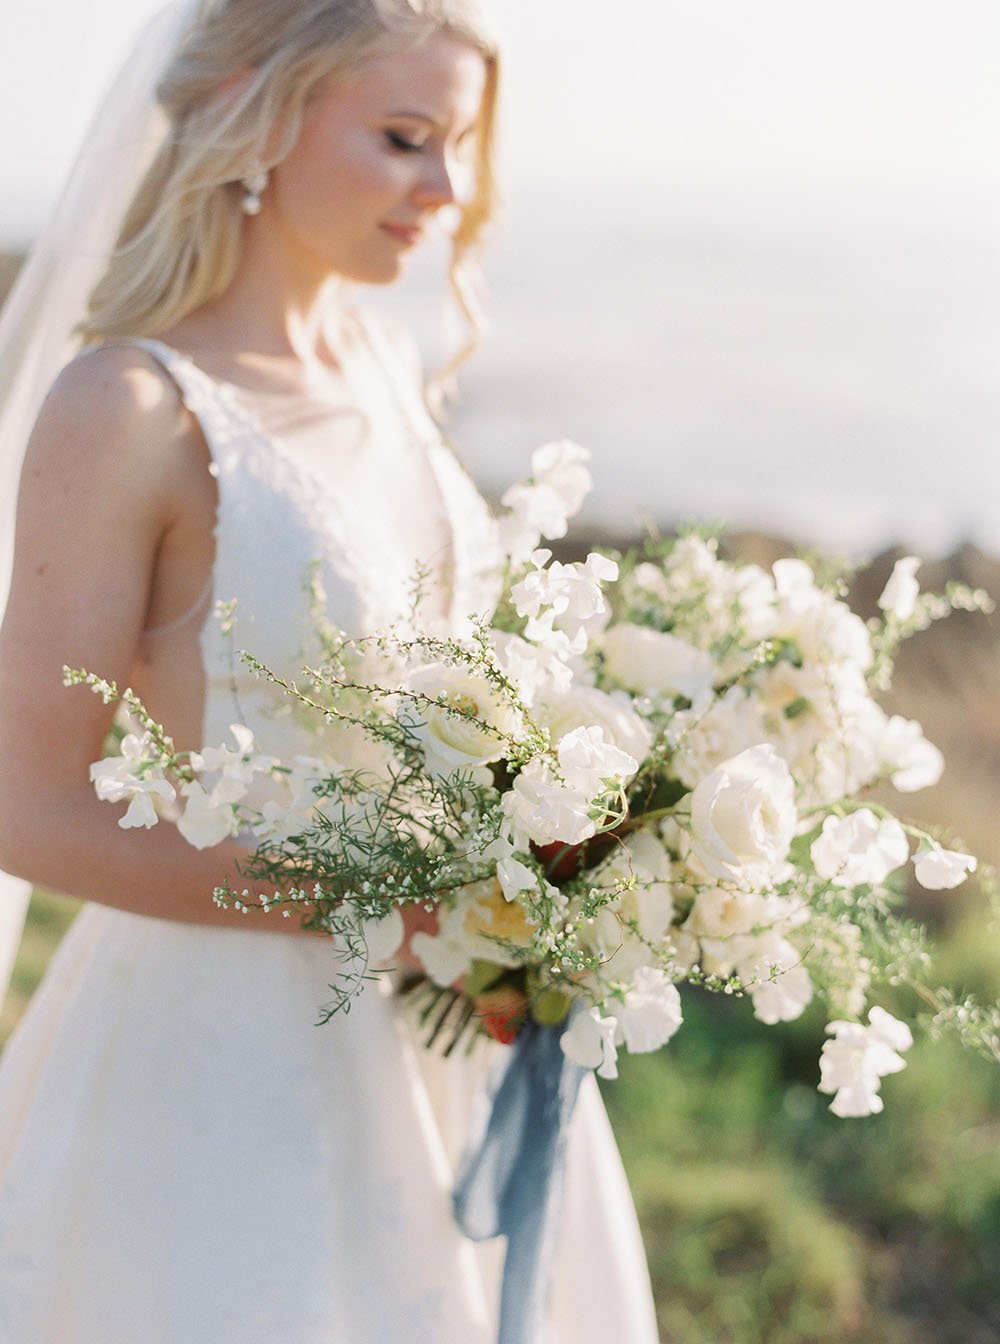 Chân dung cô dâu bỏ trốn ở Bờ biển Thái Bình Dương với bó hoa trắng hoang dã và dải ruy băng xanh bụi